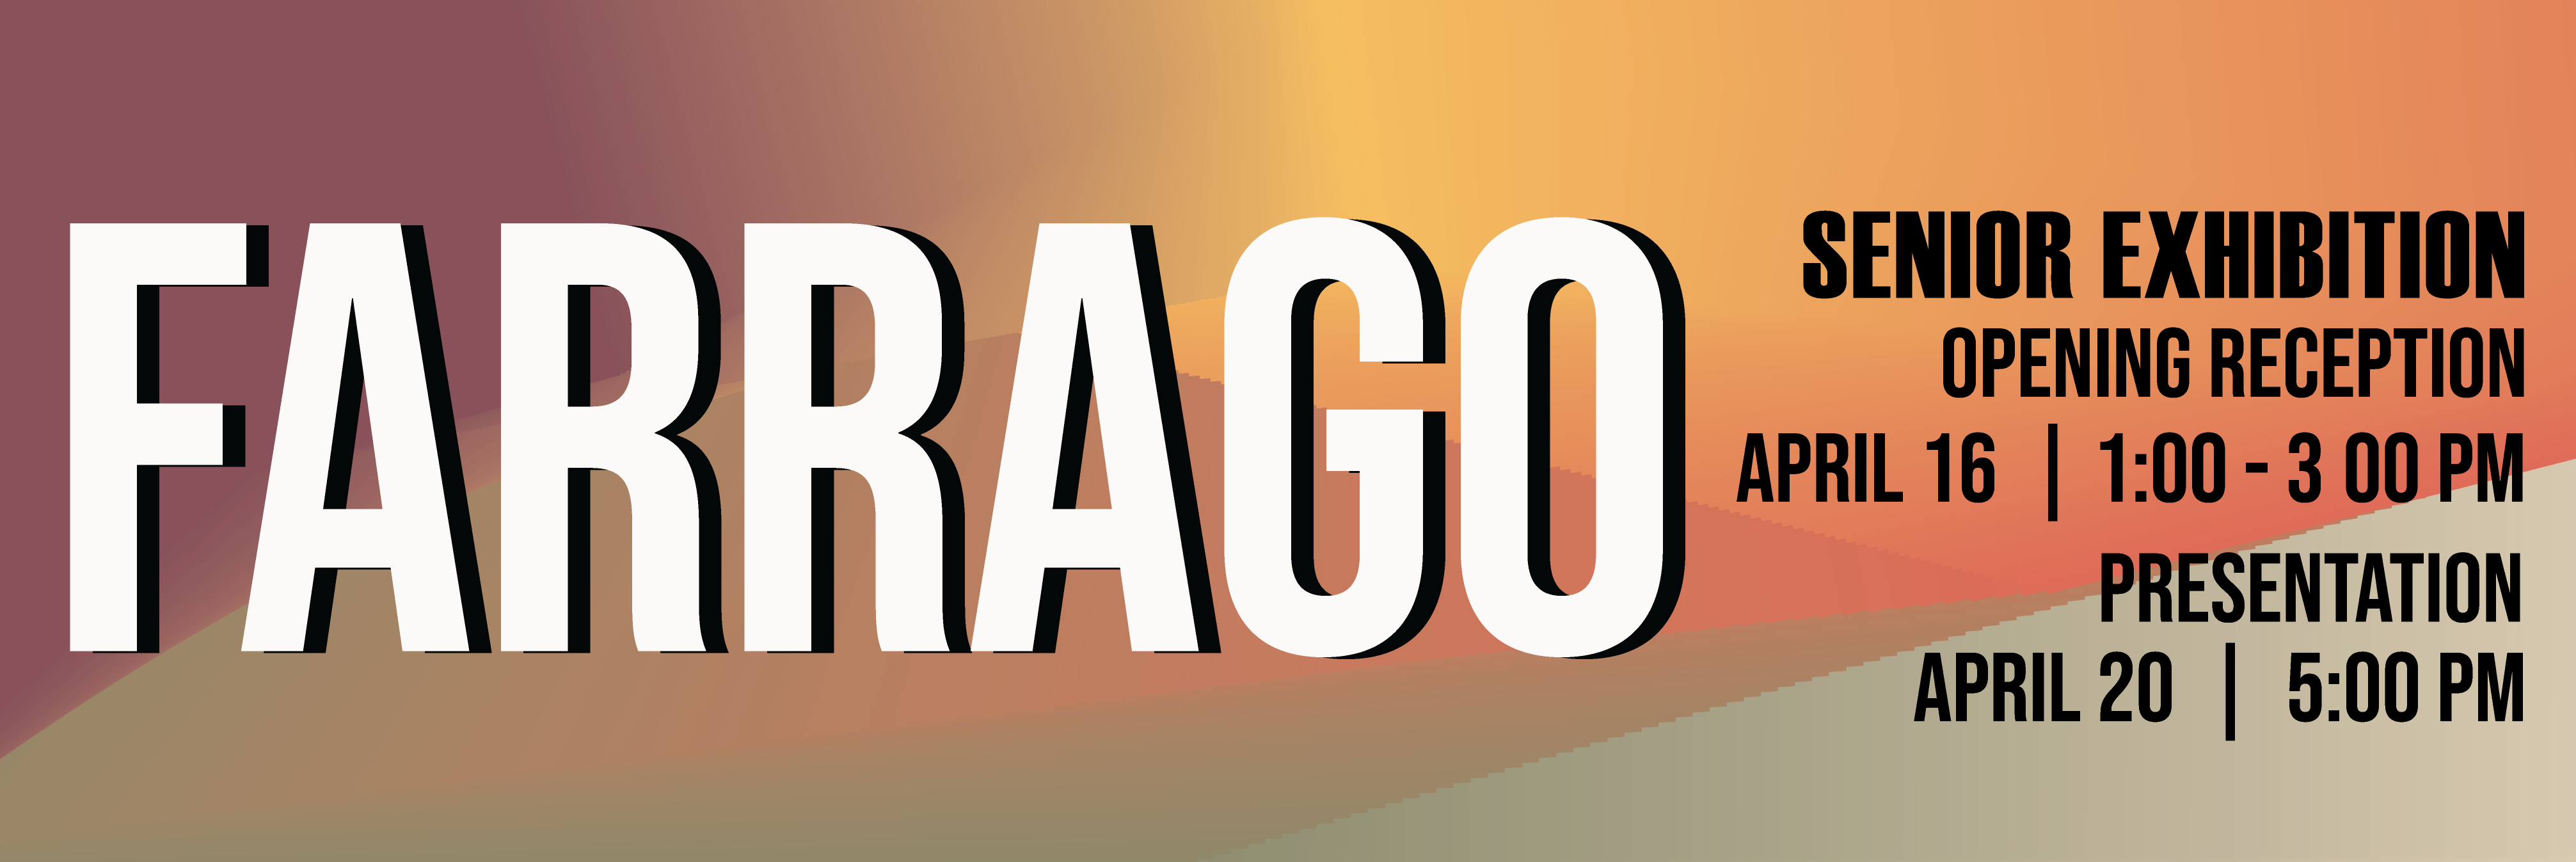 farrago-web-design.png